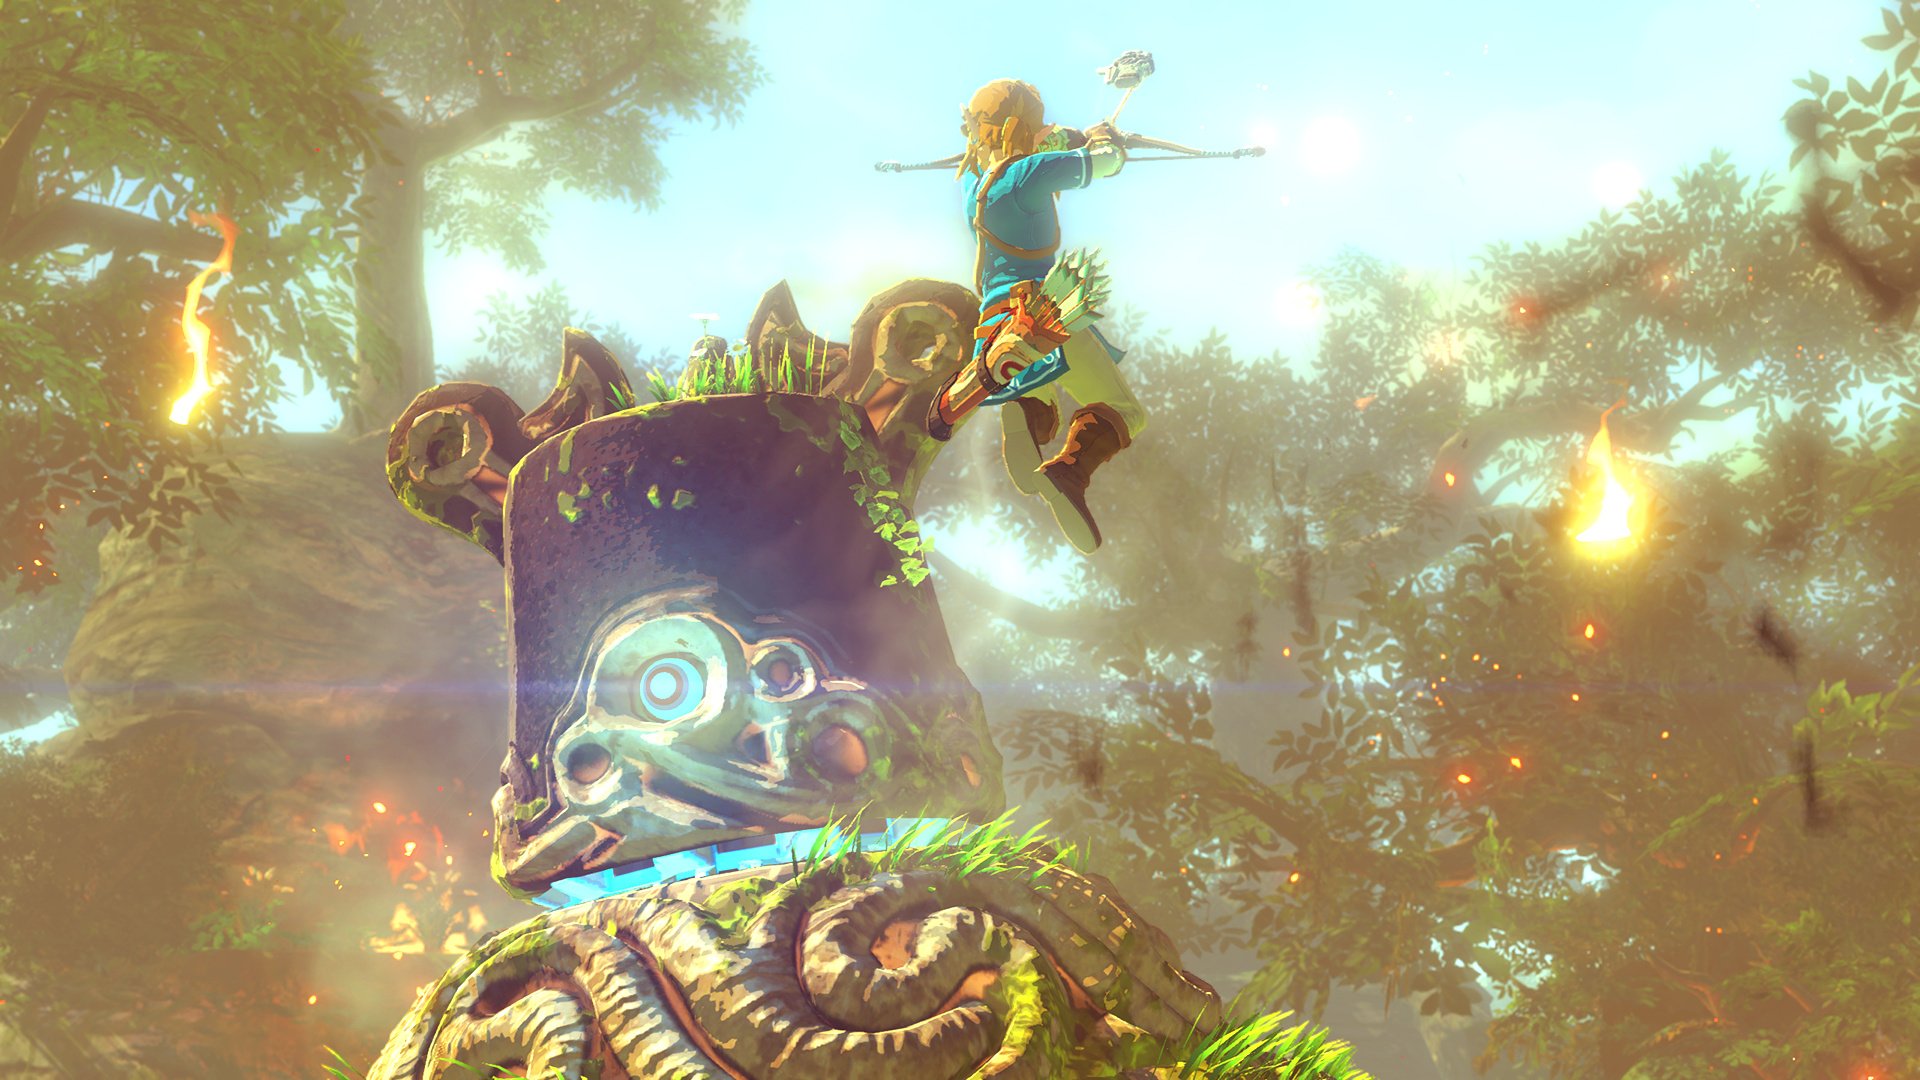 Descarga gratuita de fondo de pantalla para móvil de The Legend Of Zelda: Breath Of The Wild, Zelda, Videojuego.